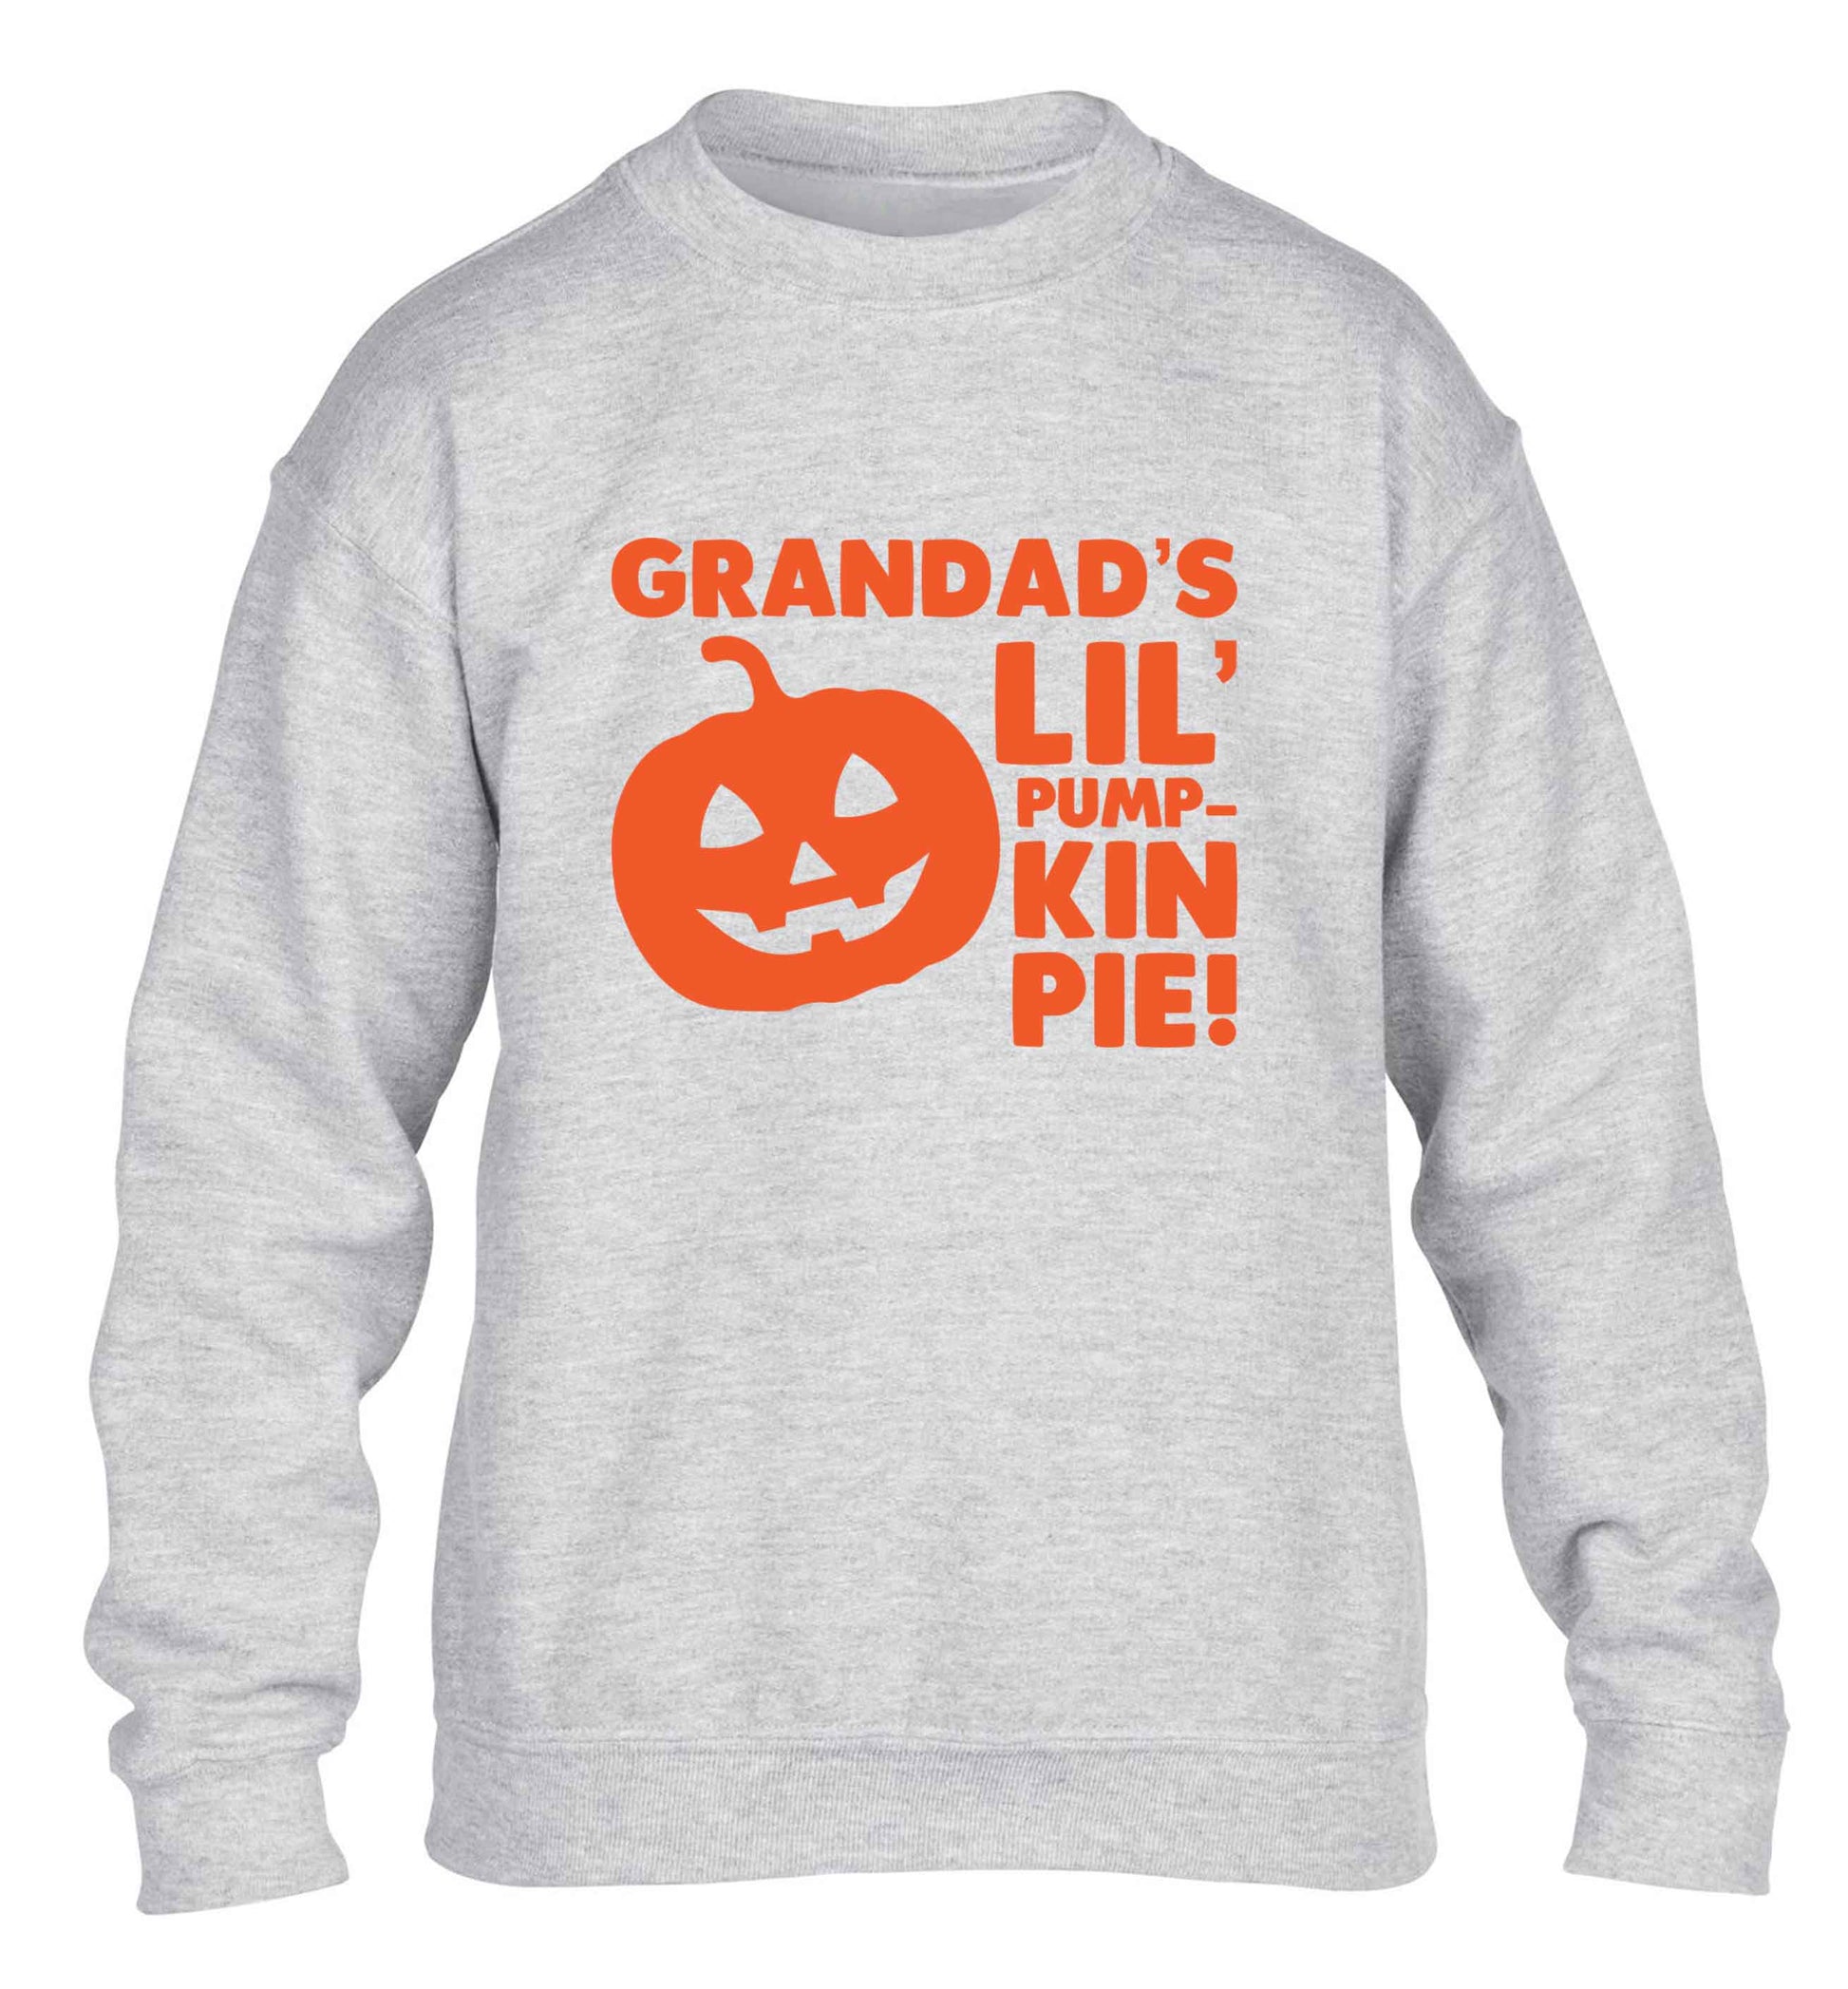 Grandad's lil' pumpkin pie children's grey sweater 12-13 Years